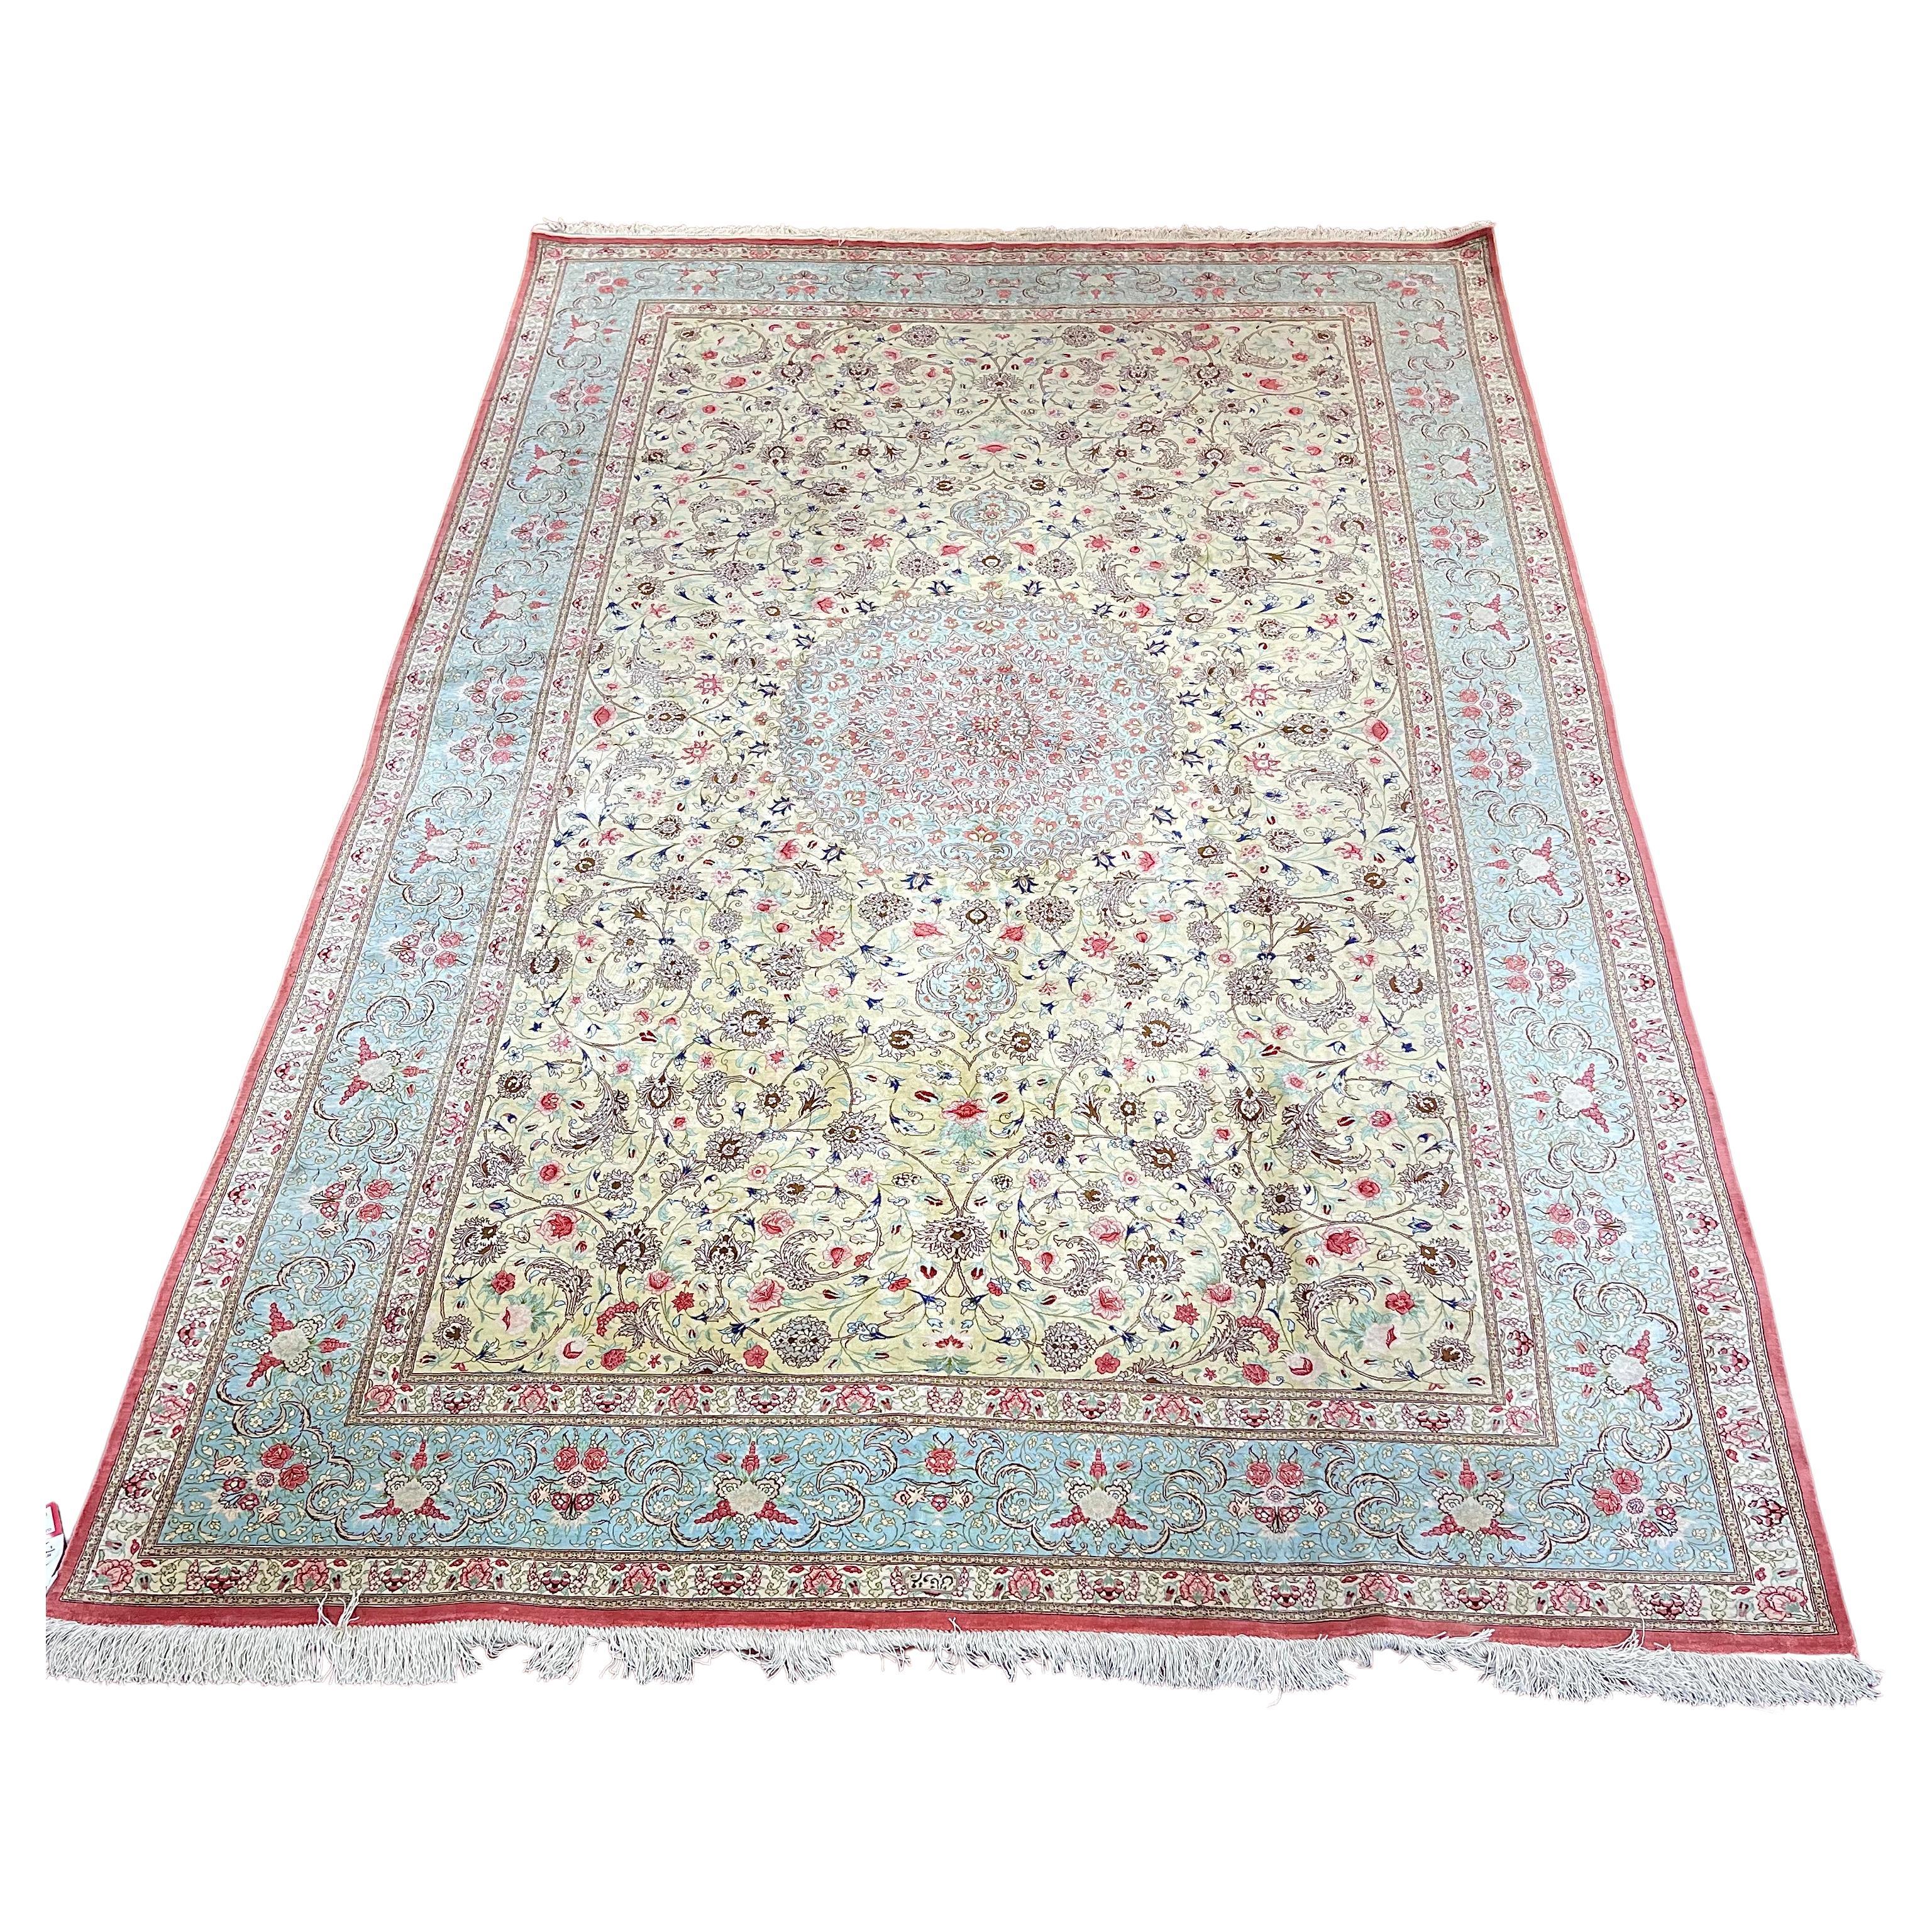 Trs beau tapis/carpette persan en soie de Qum